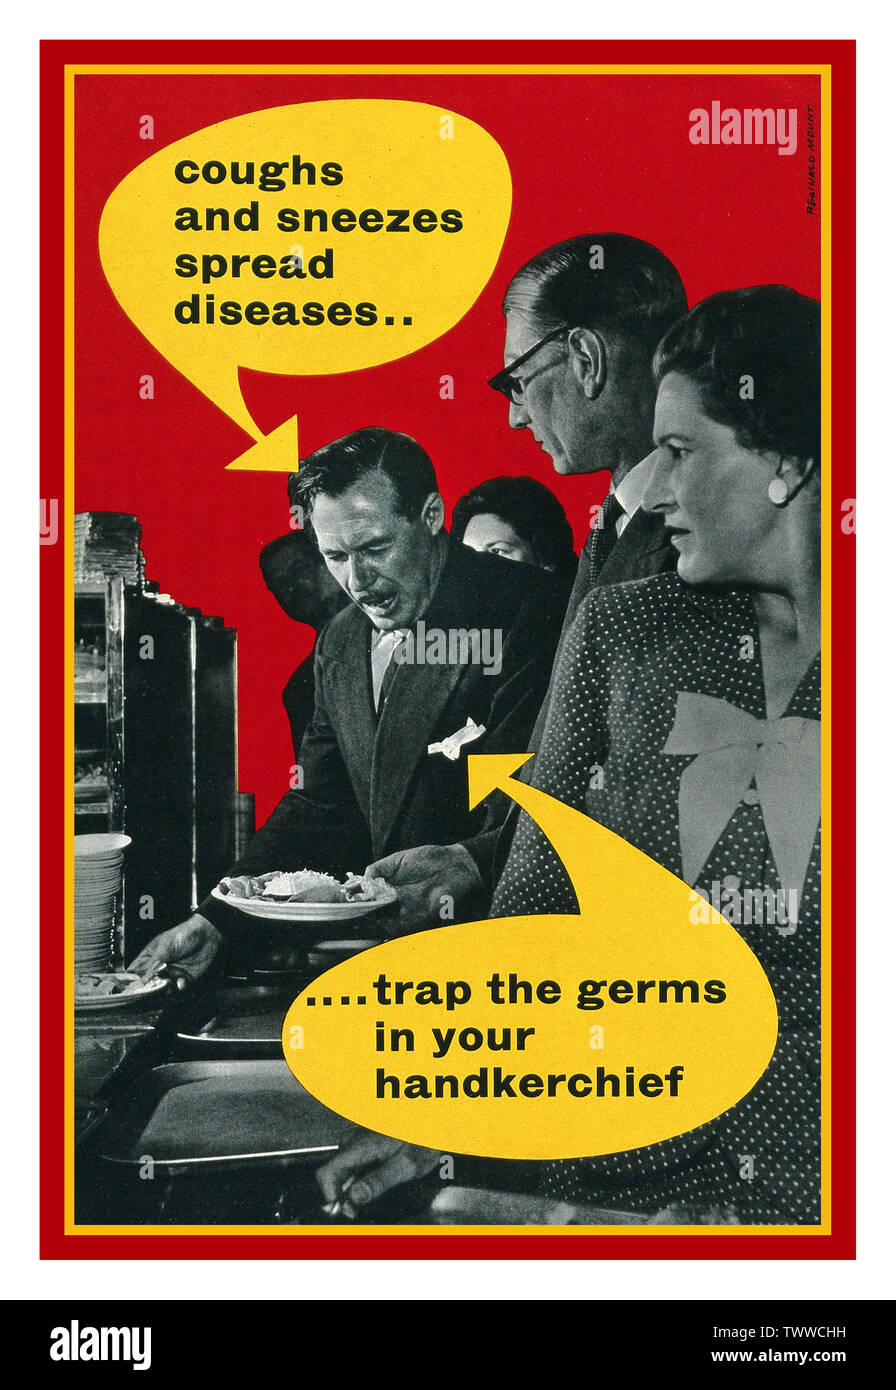 Der 1940er Jahrgang britische britische Propaganda Gesundheit Poster. Das Ministerium für Gesundheit sagt: "Husten und Niesen verbreitet Krankheiten". "Falle der Keime in ihrem Taschentuch". Ein Mann zu husten oder niesen nicht mit einem Taschentuch Farblithographie Stockfoto